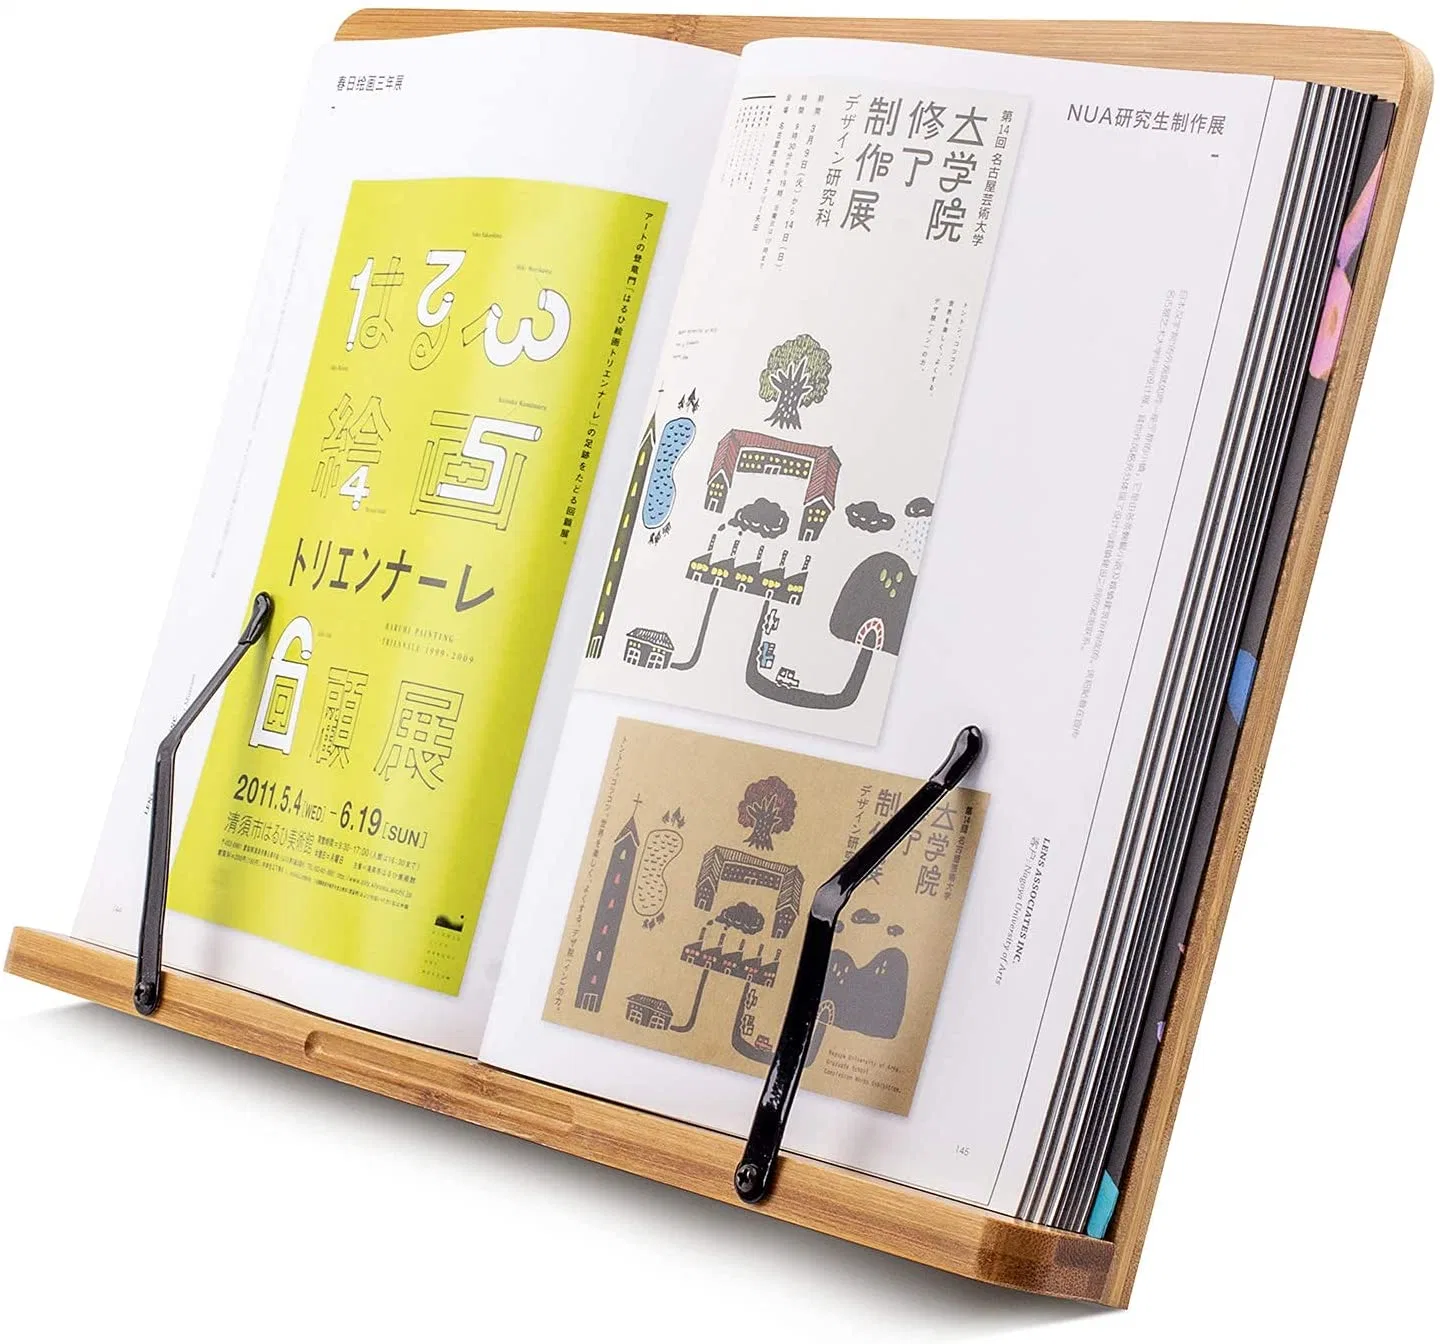 Um grande+ 15/13/11 Polegadas Catálogo de bambu stands e suportes para leitura de mãos livres na cama, Cookbook, material didático, Direito, com 5 de Altura Ajustável